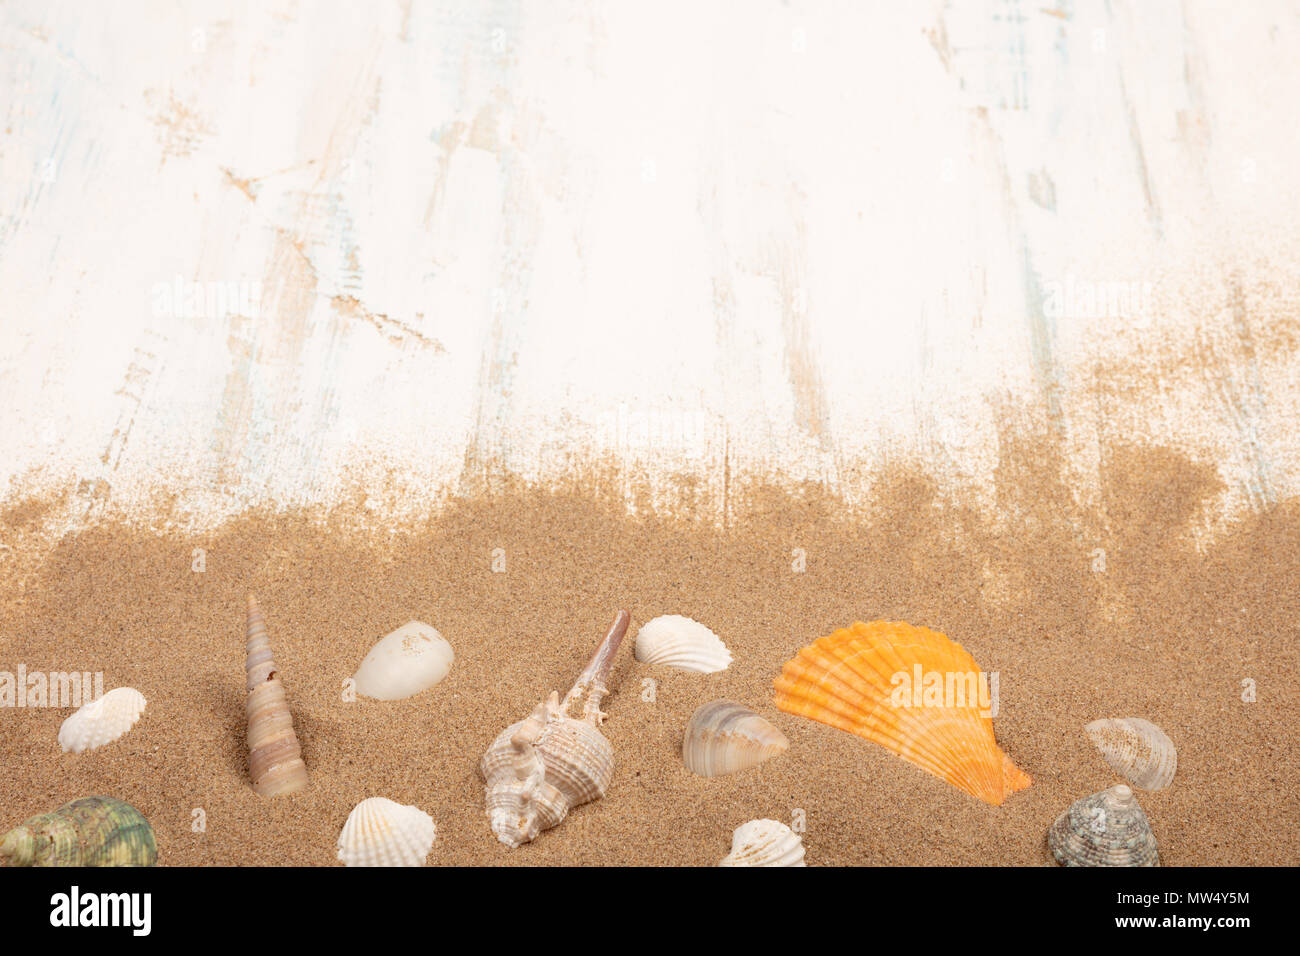 Conchiglie con sabbia su un blu e bianco sullo sfondo di legno. Vista da sopra con area di testo Foto Stock